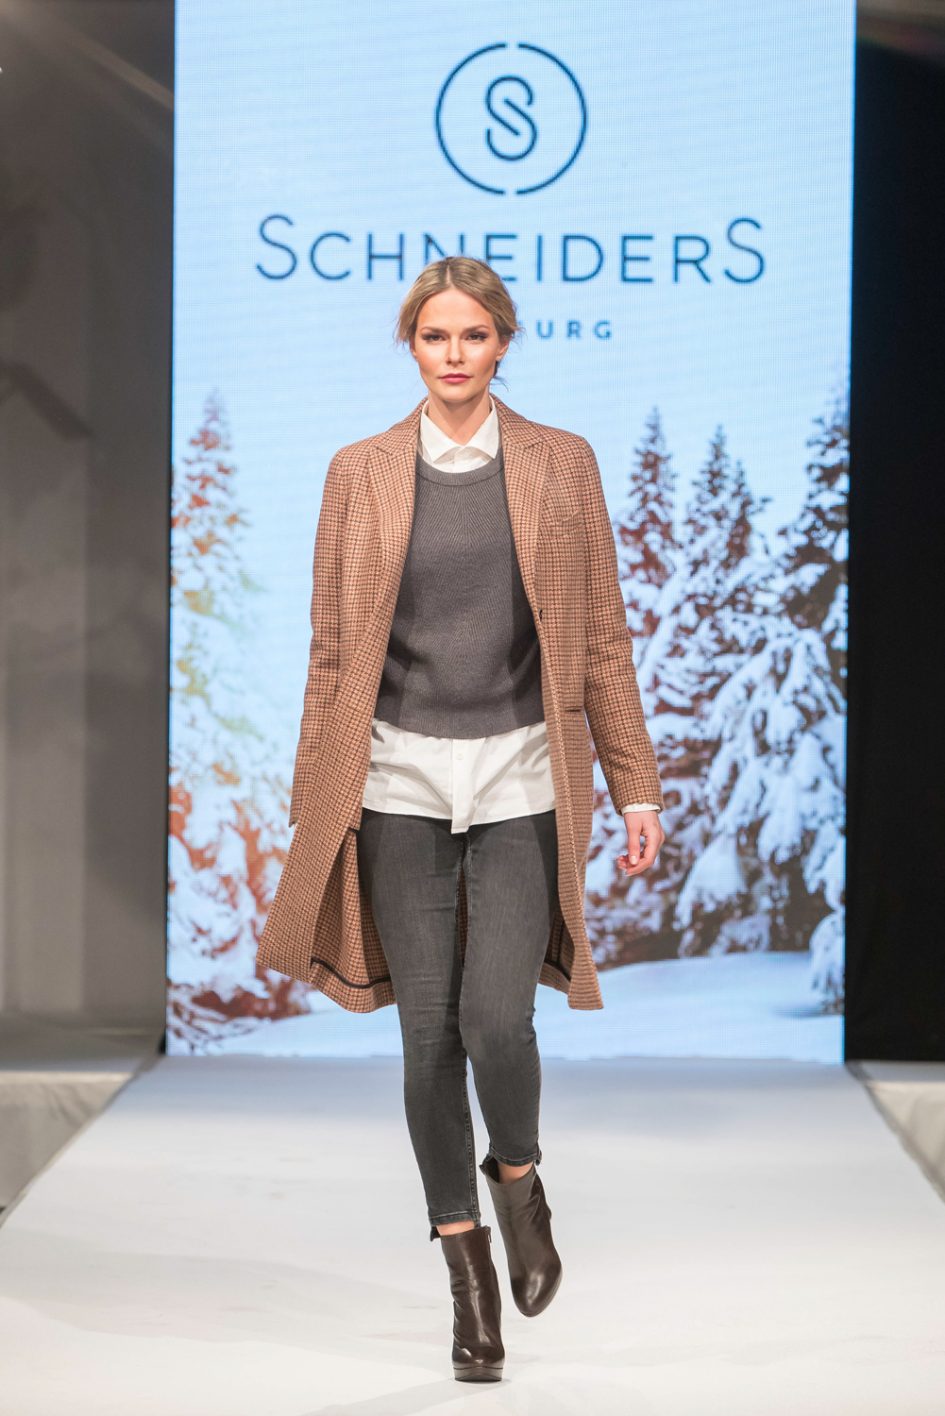 Schneiders / Gipfeltreffen 23.01.18 Salzburg